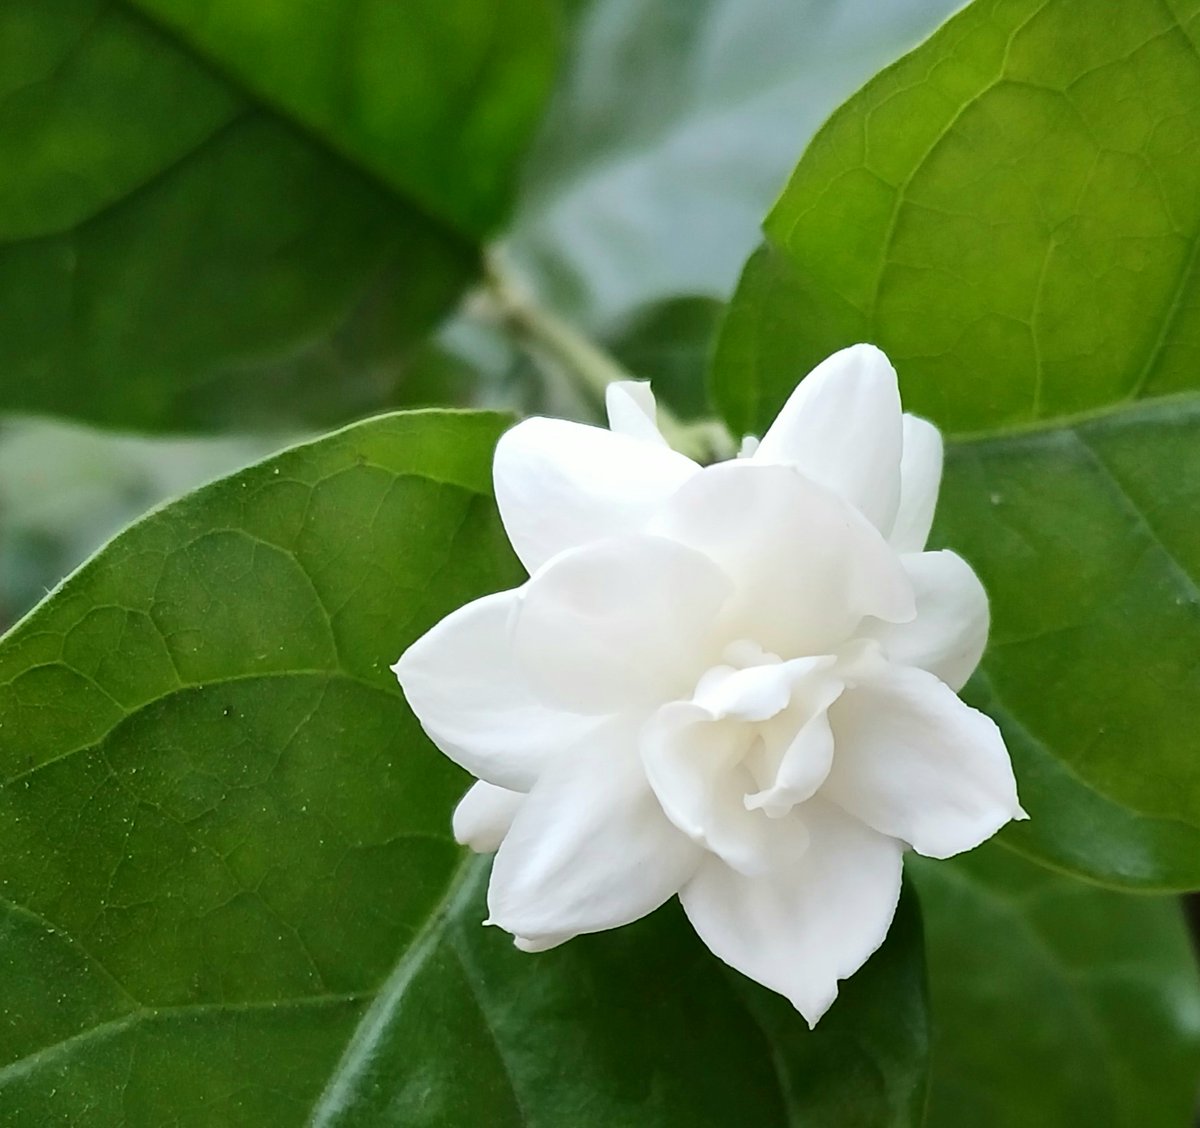 Fragrant jasmine for #FlowersOnFriday #flowers #summer #flowerphotography #GardenersWorld #garden